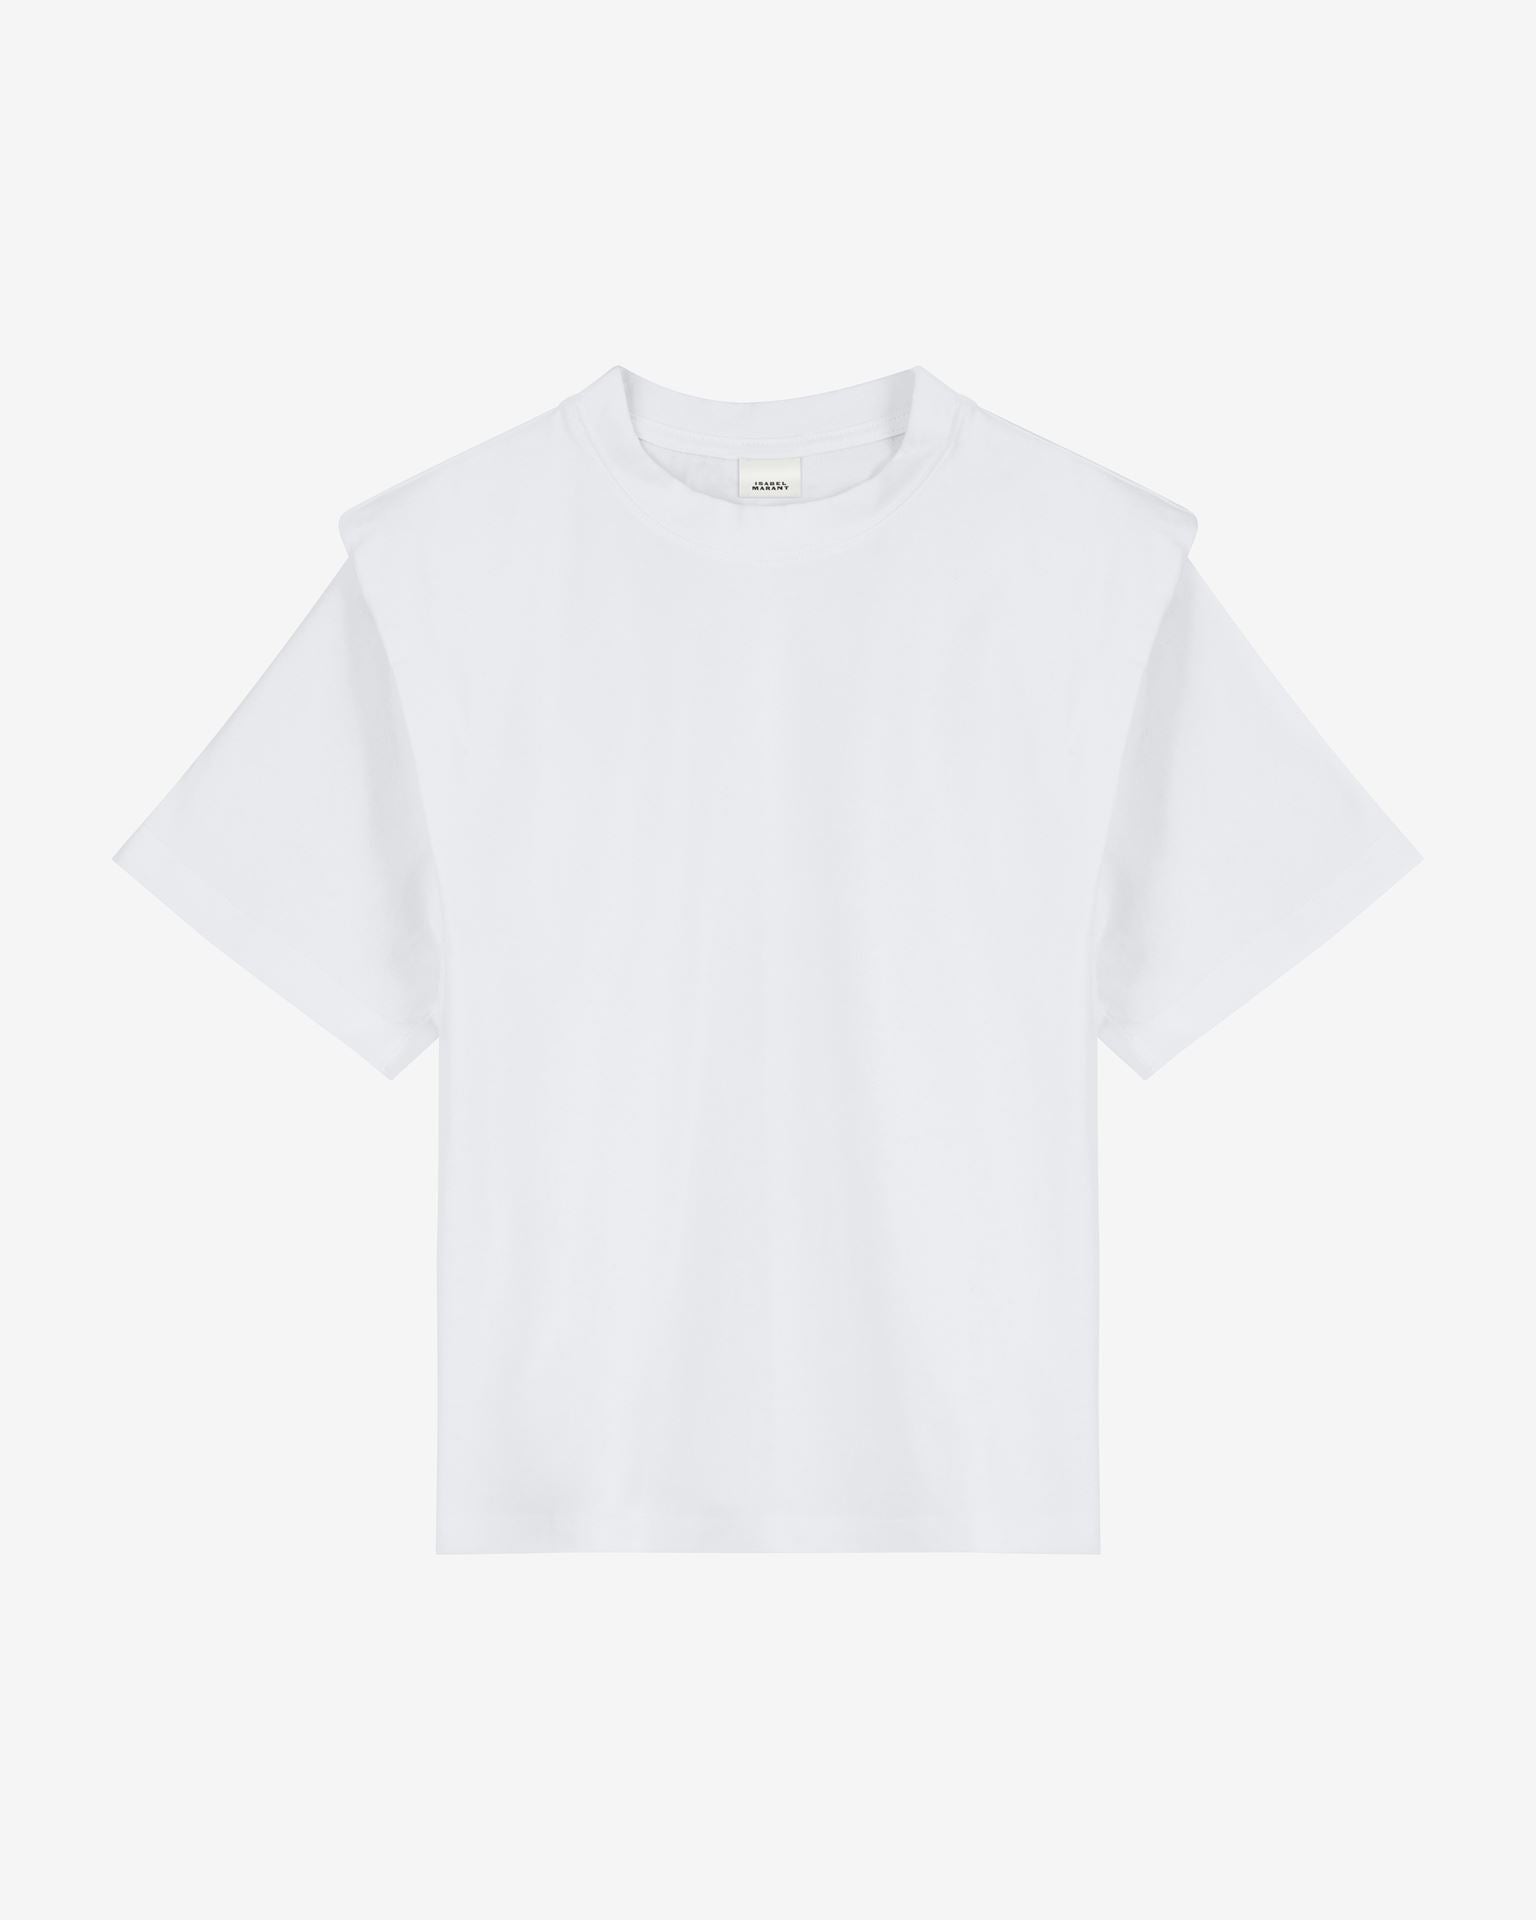 Zelitos tee-shirt, white